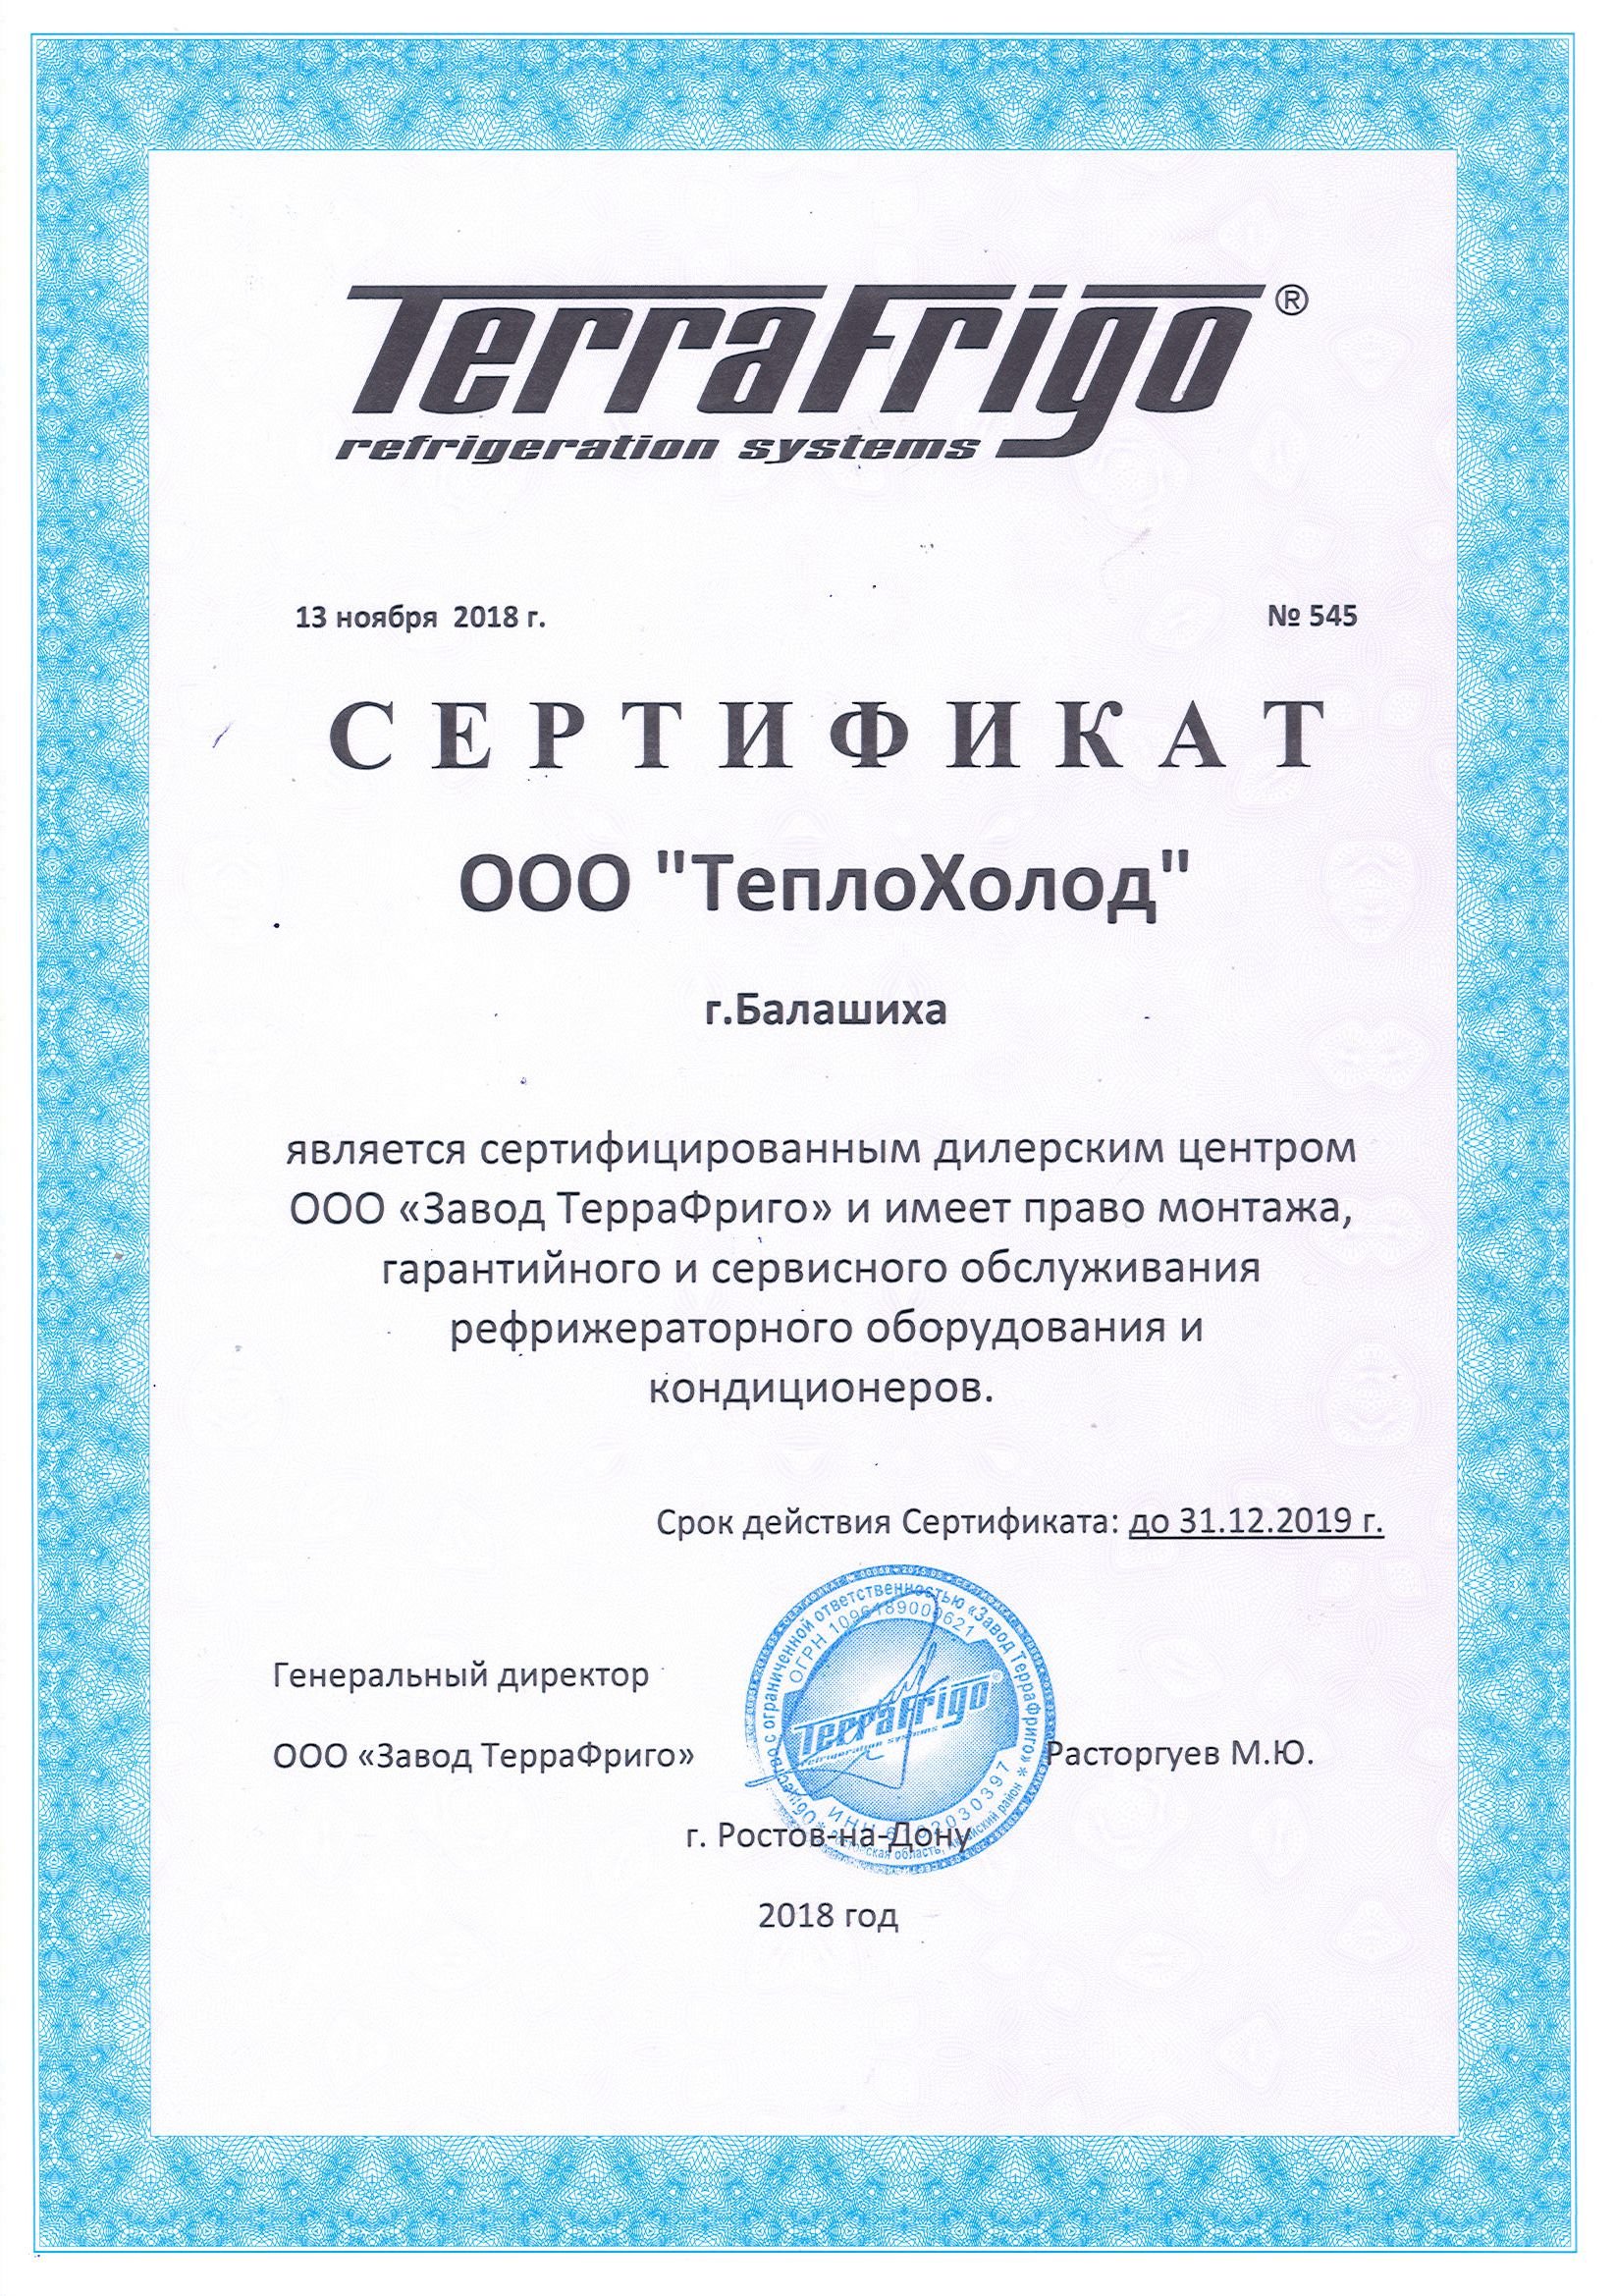 Сертификат официального дилерского центра